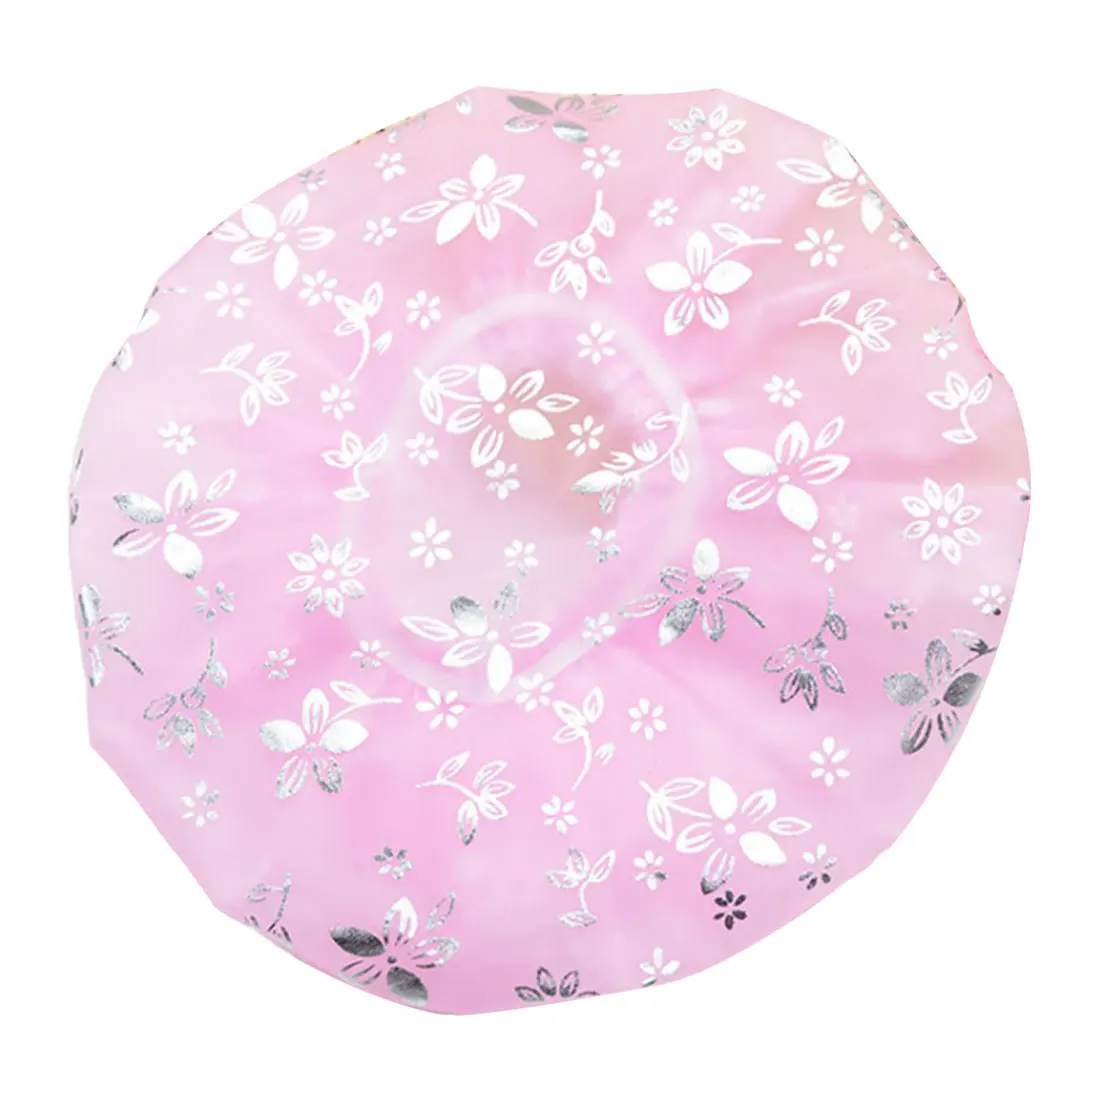 Bauhinia дизайн водонепроницаемый эластичный спа шапочка для душа шляпа для ванны крышка для волос защитные шапки ванная комната продукт - Цвет: Pink